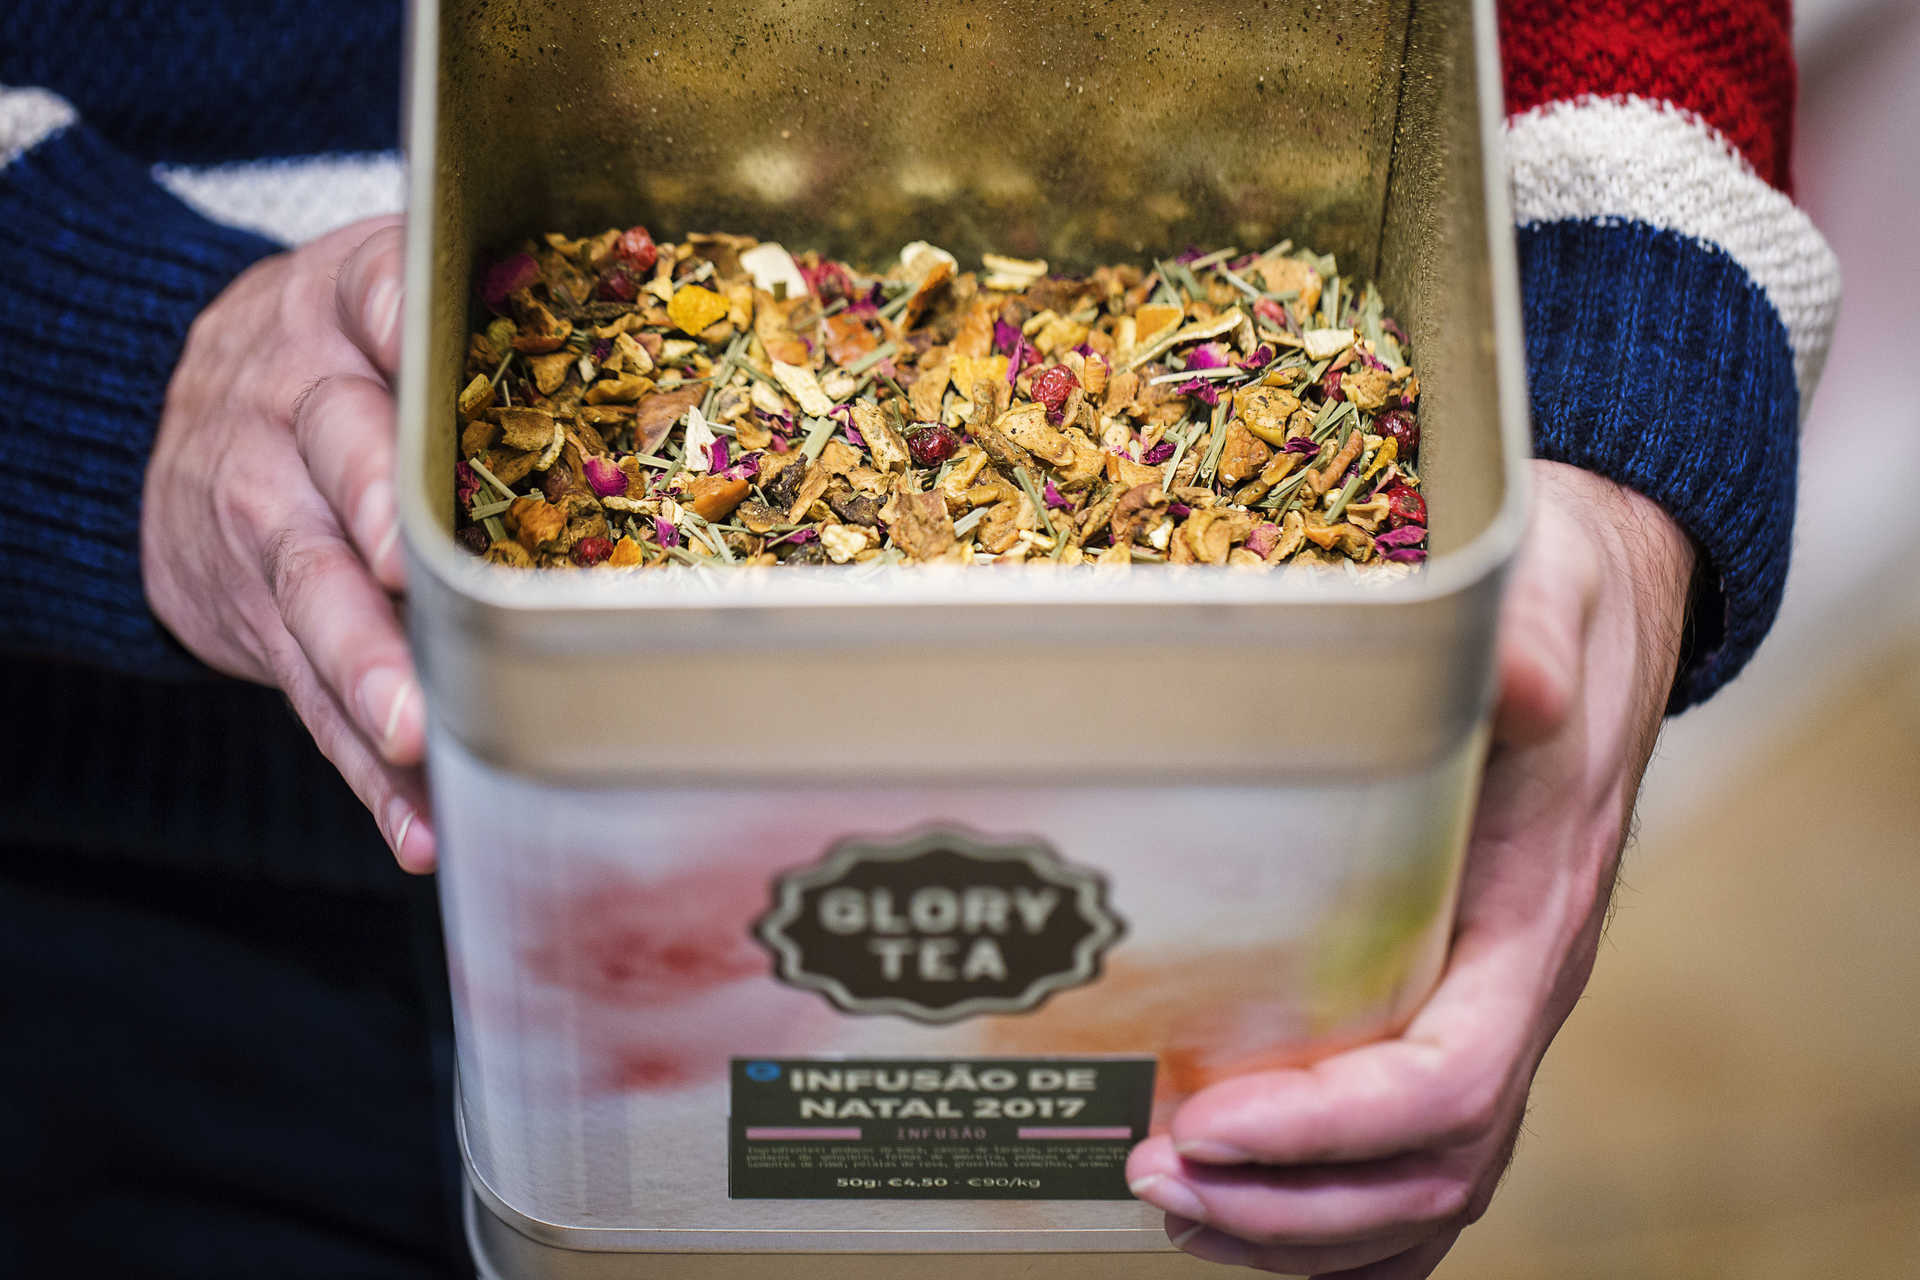 A Glory Tea, marca portuguesa de chás e infusões